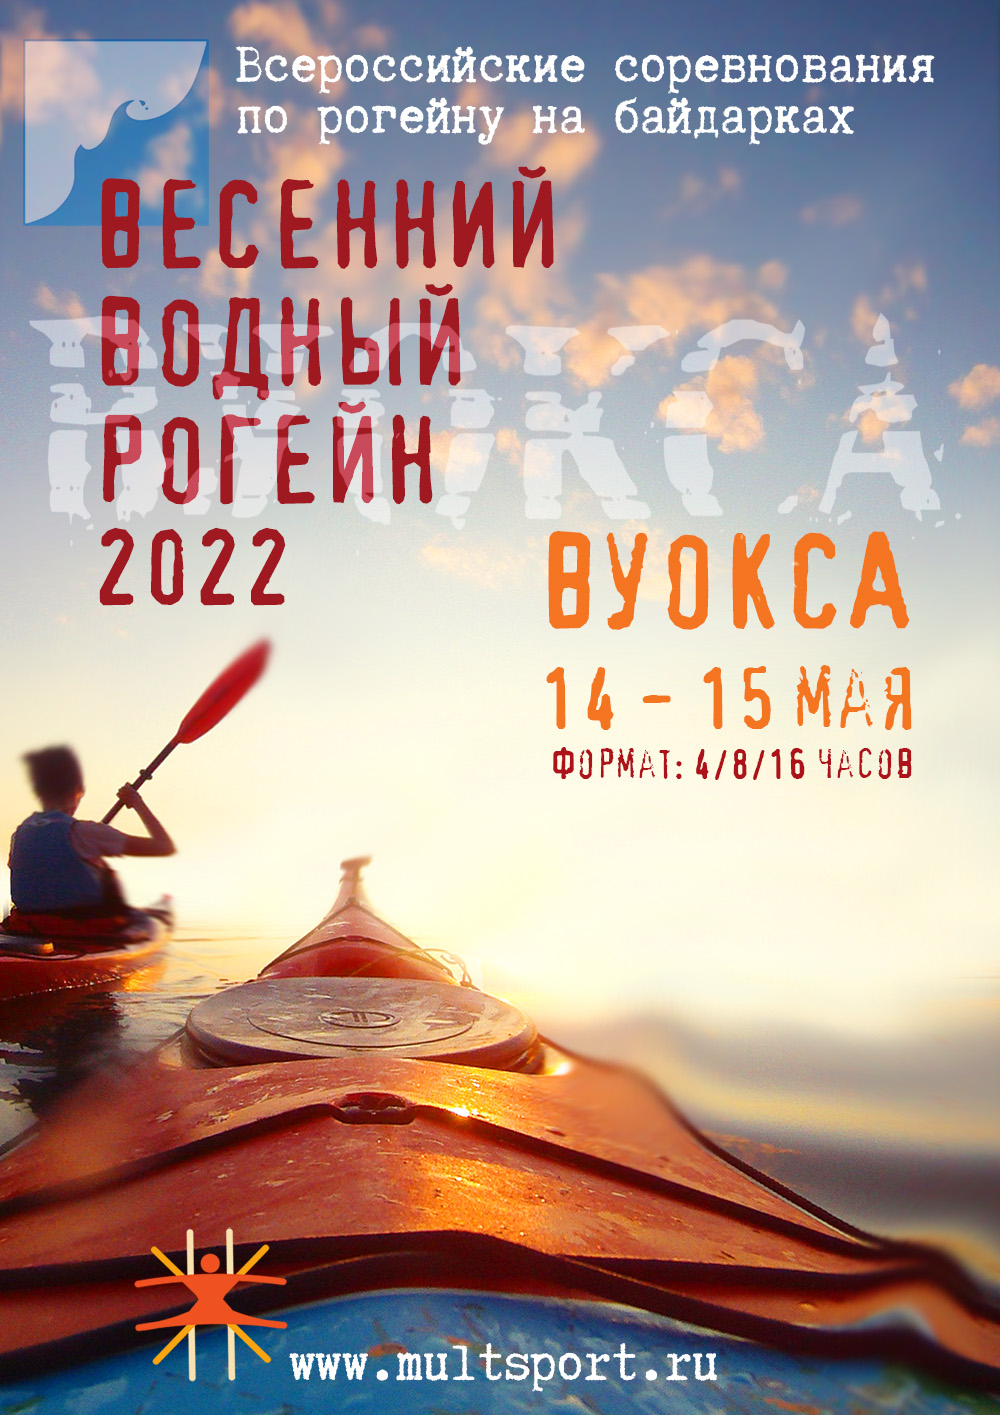 Положение о Всероссийских соревнованиях по рогейну на байдарках. Весенний водный рогейн 2022